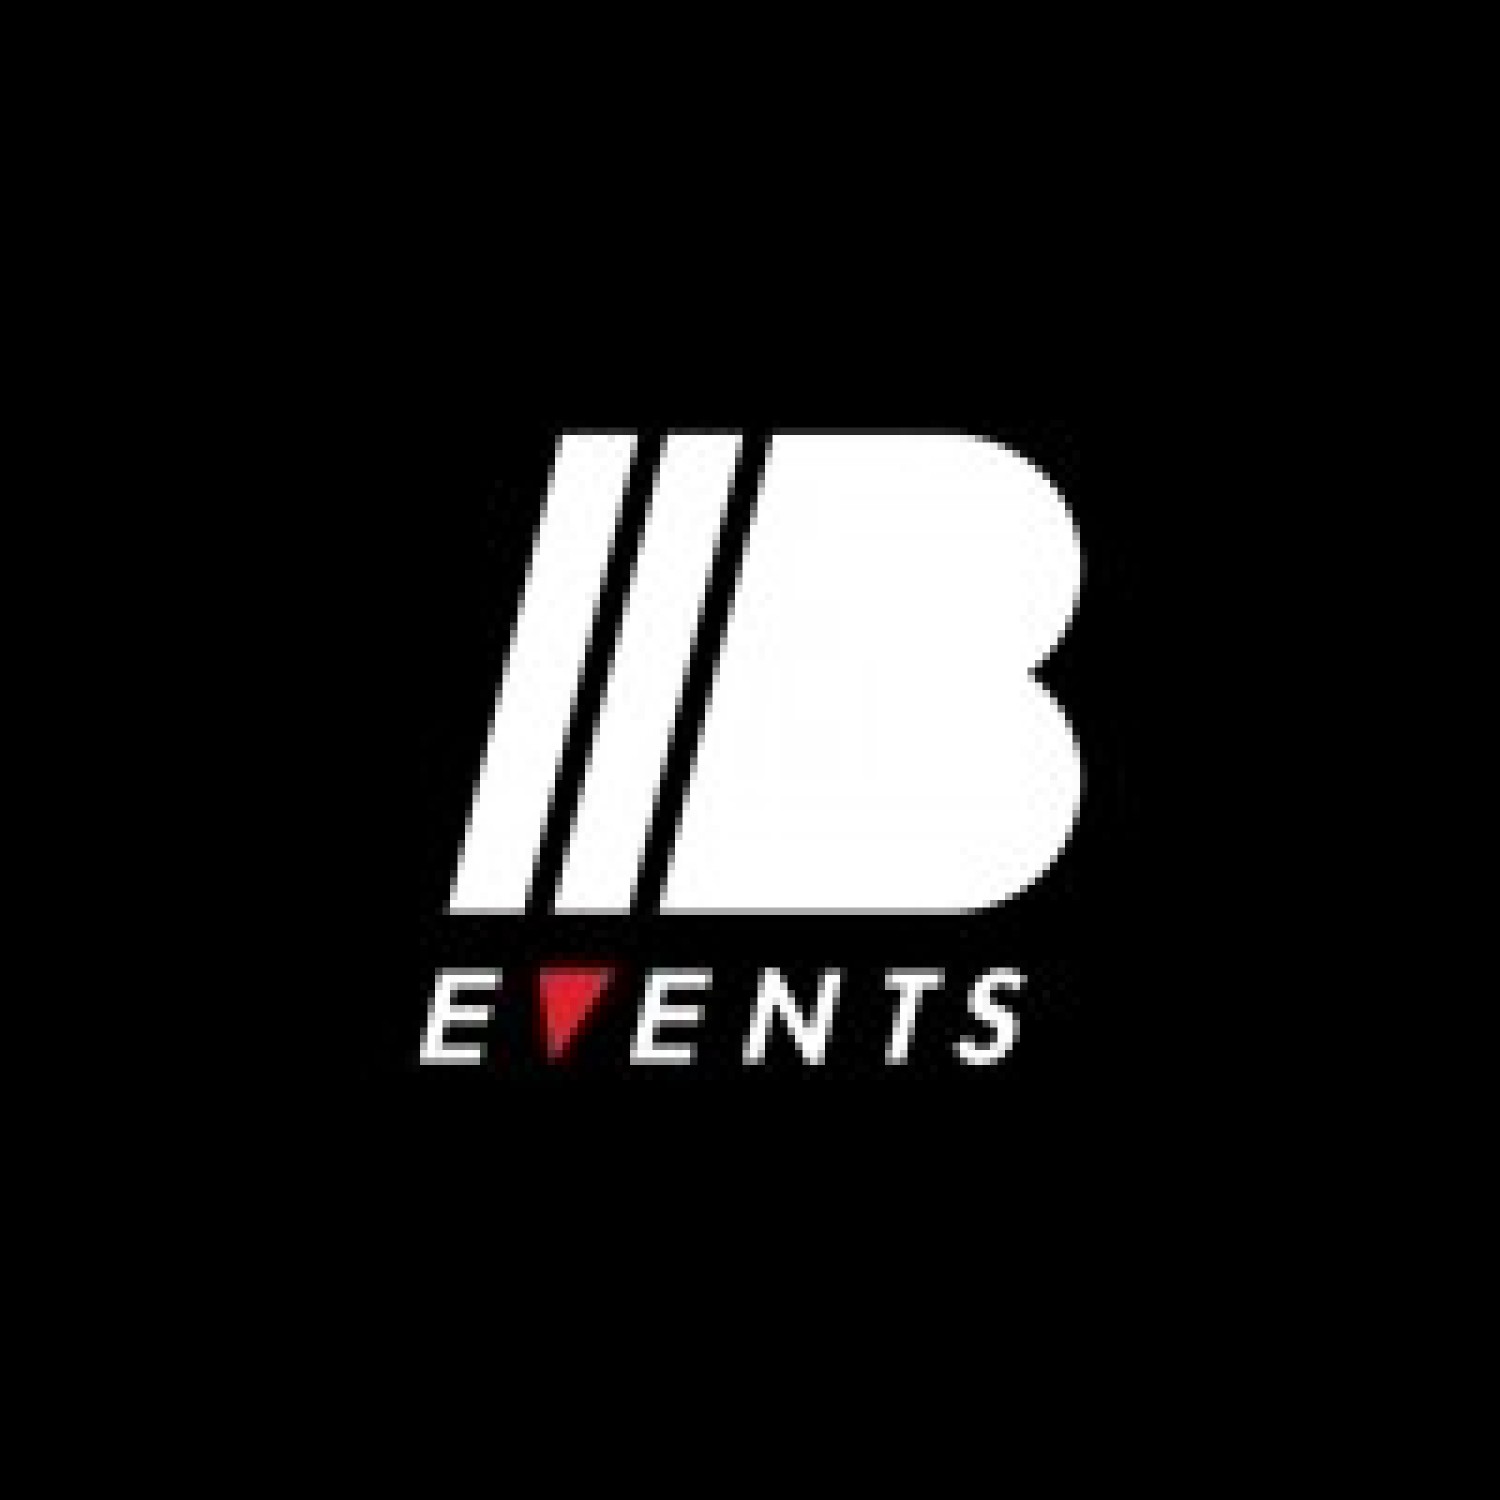 IIB Events